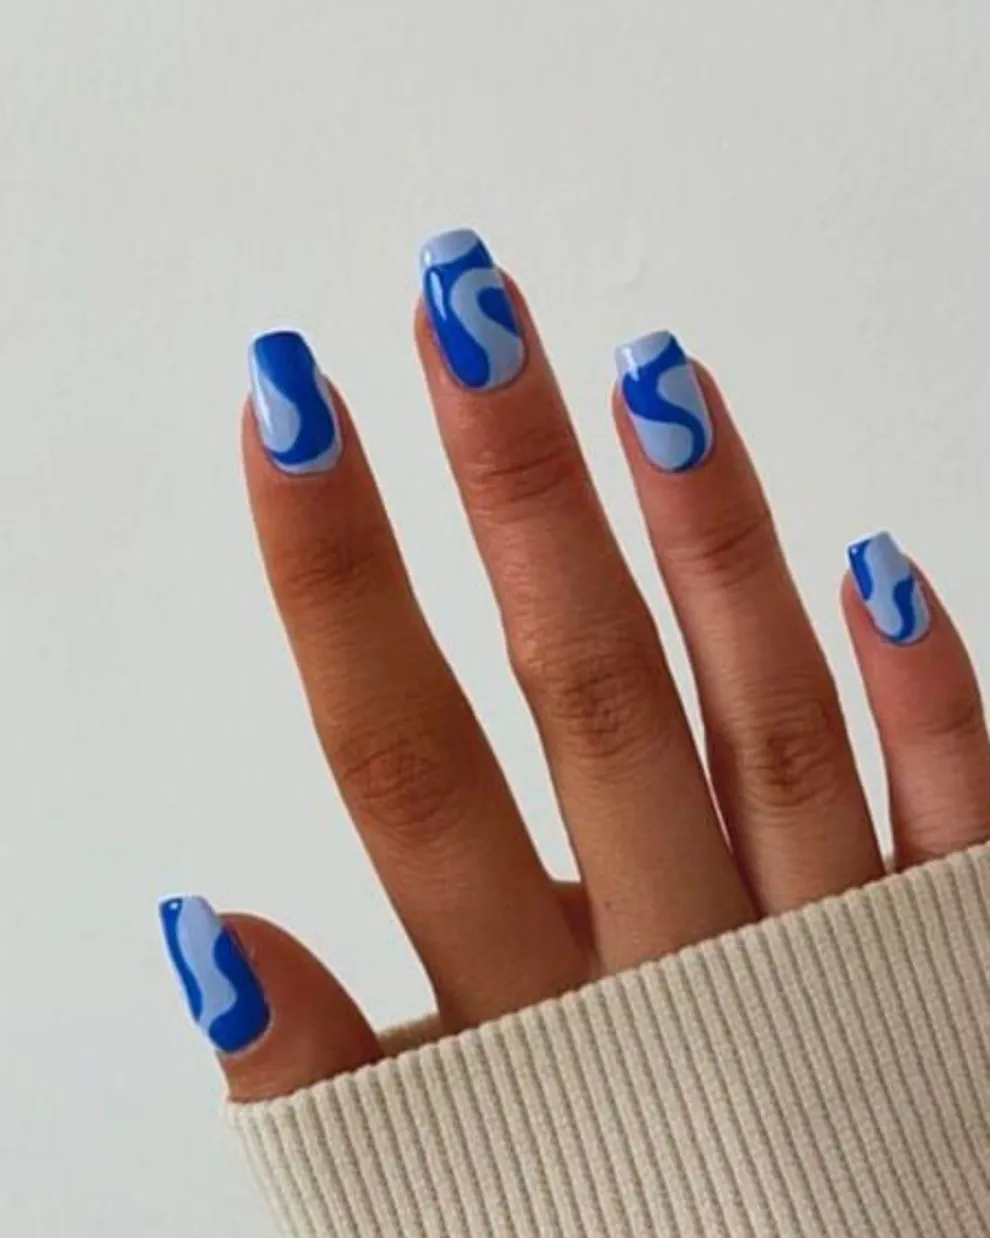 Las blue nails también son tendencia y este diseño es increíble si querés sumarte a esa movida.